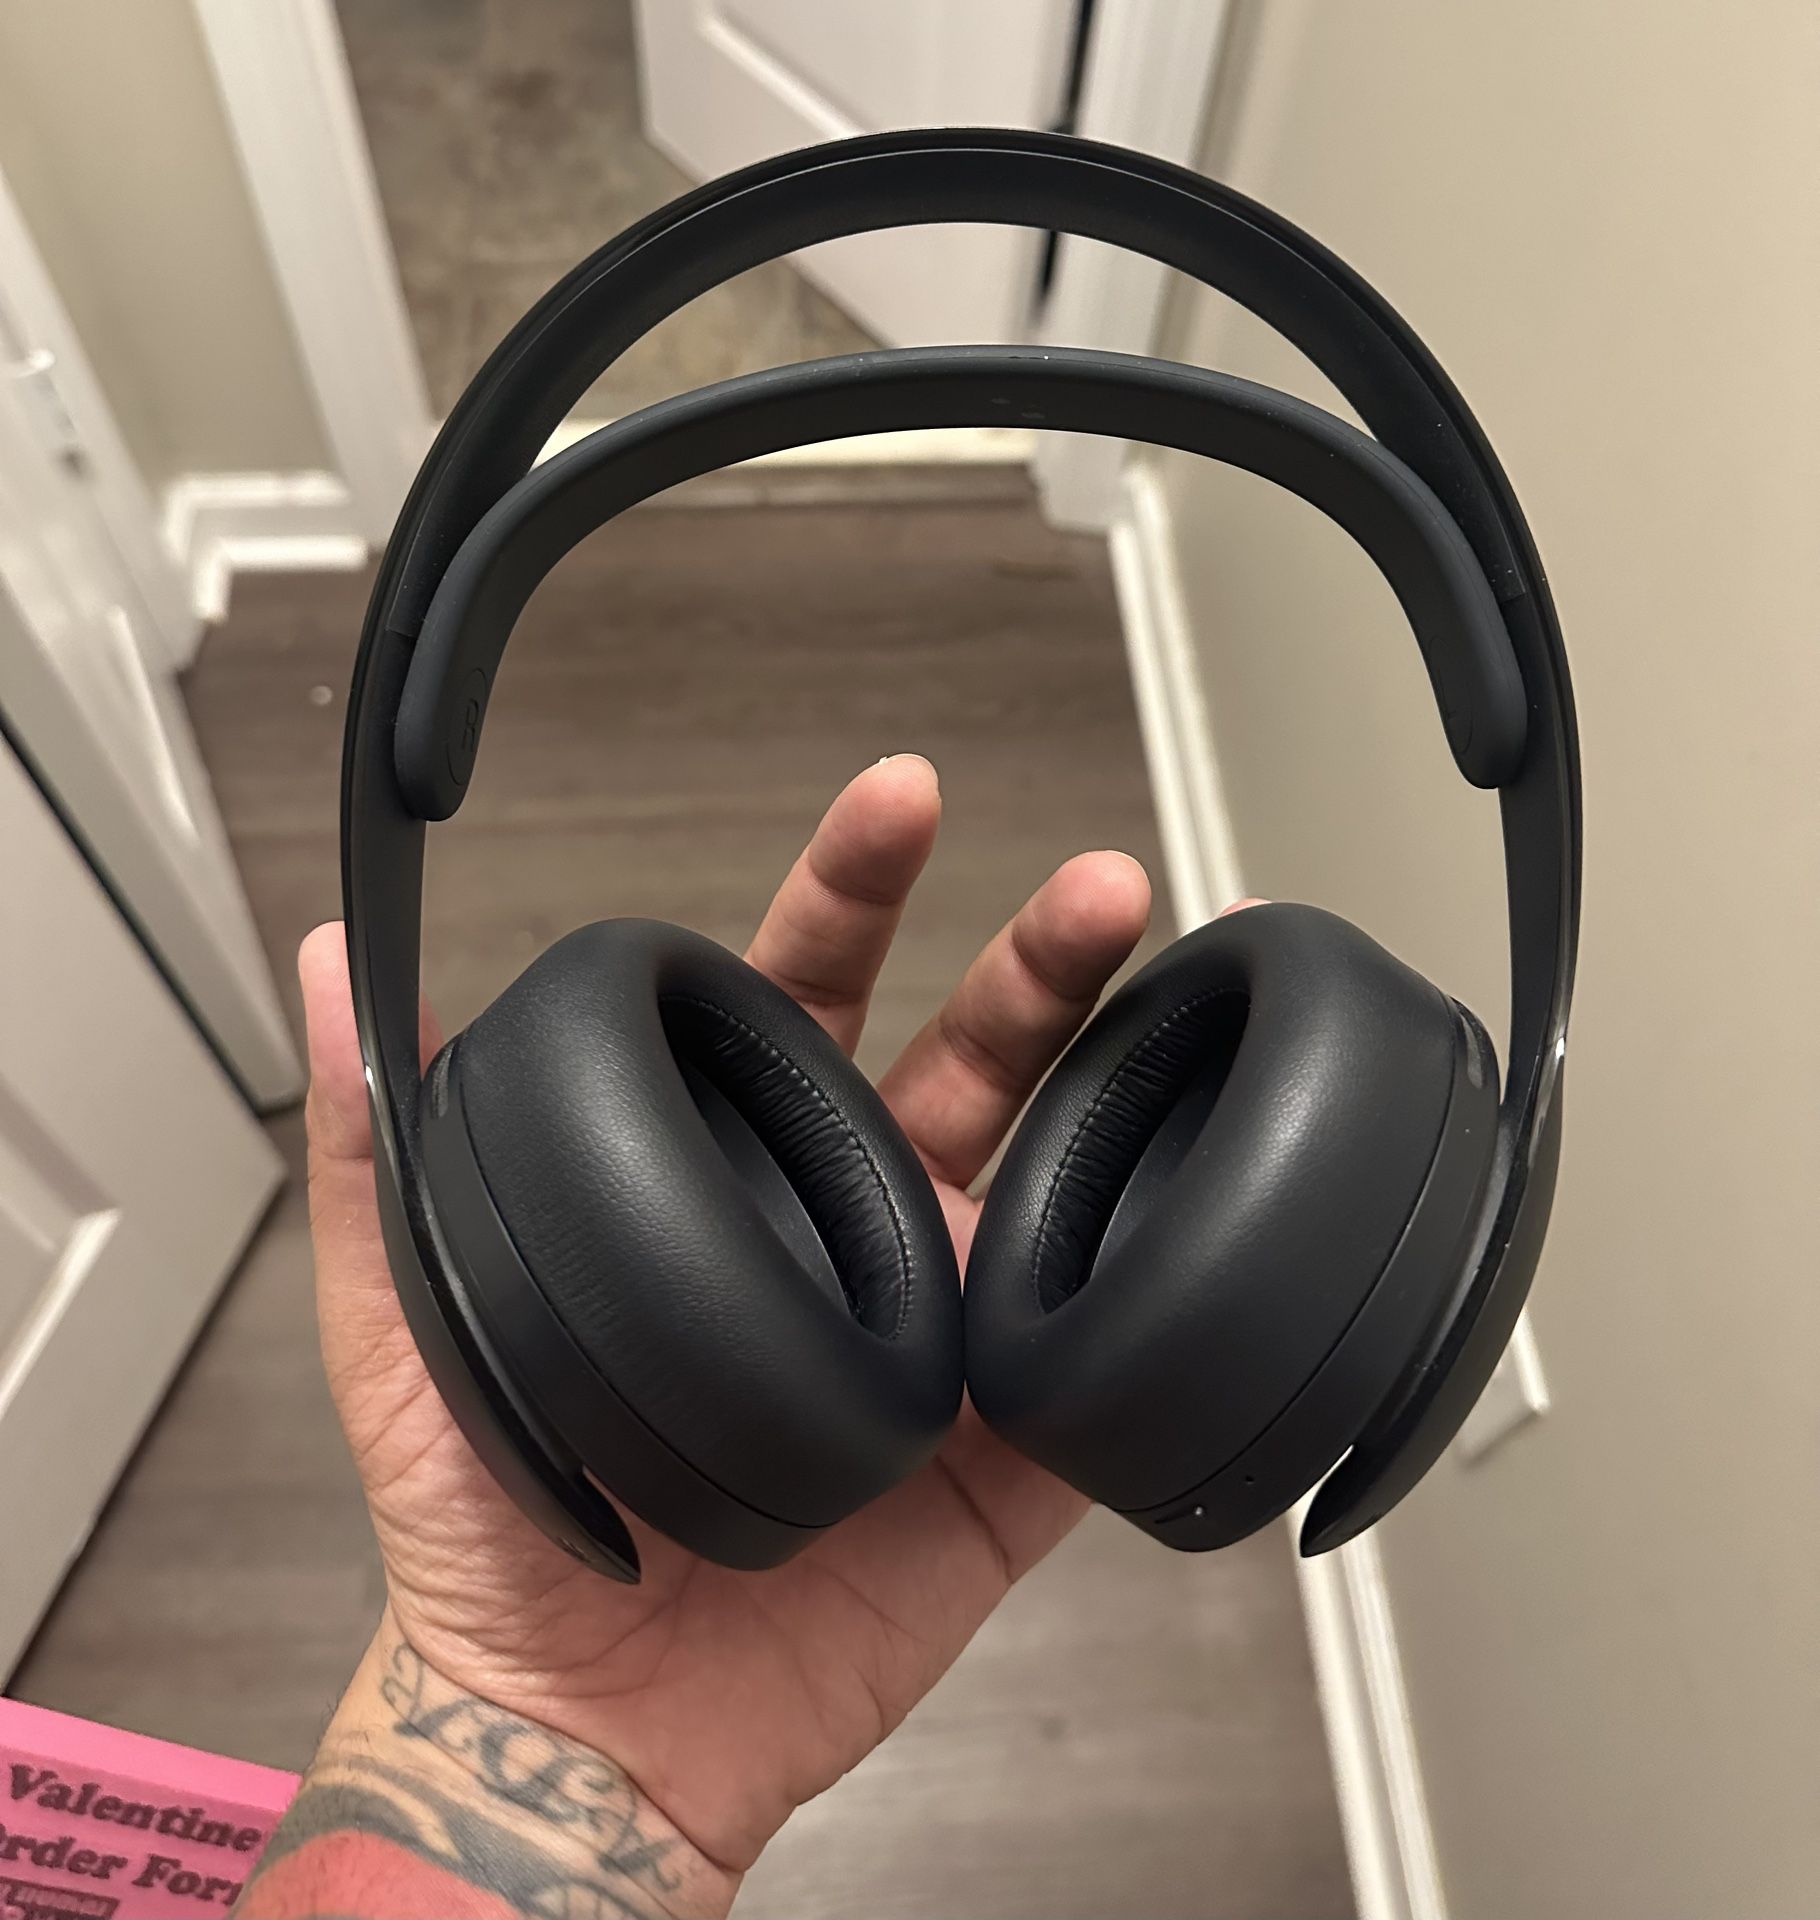 Ps5 Headphones $60 